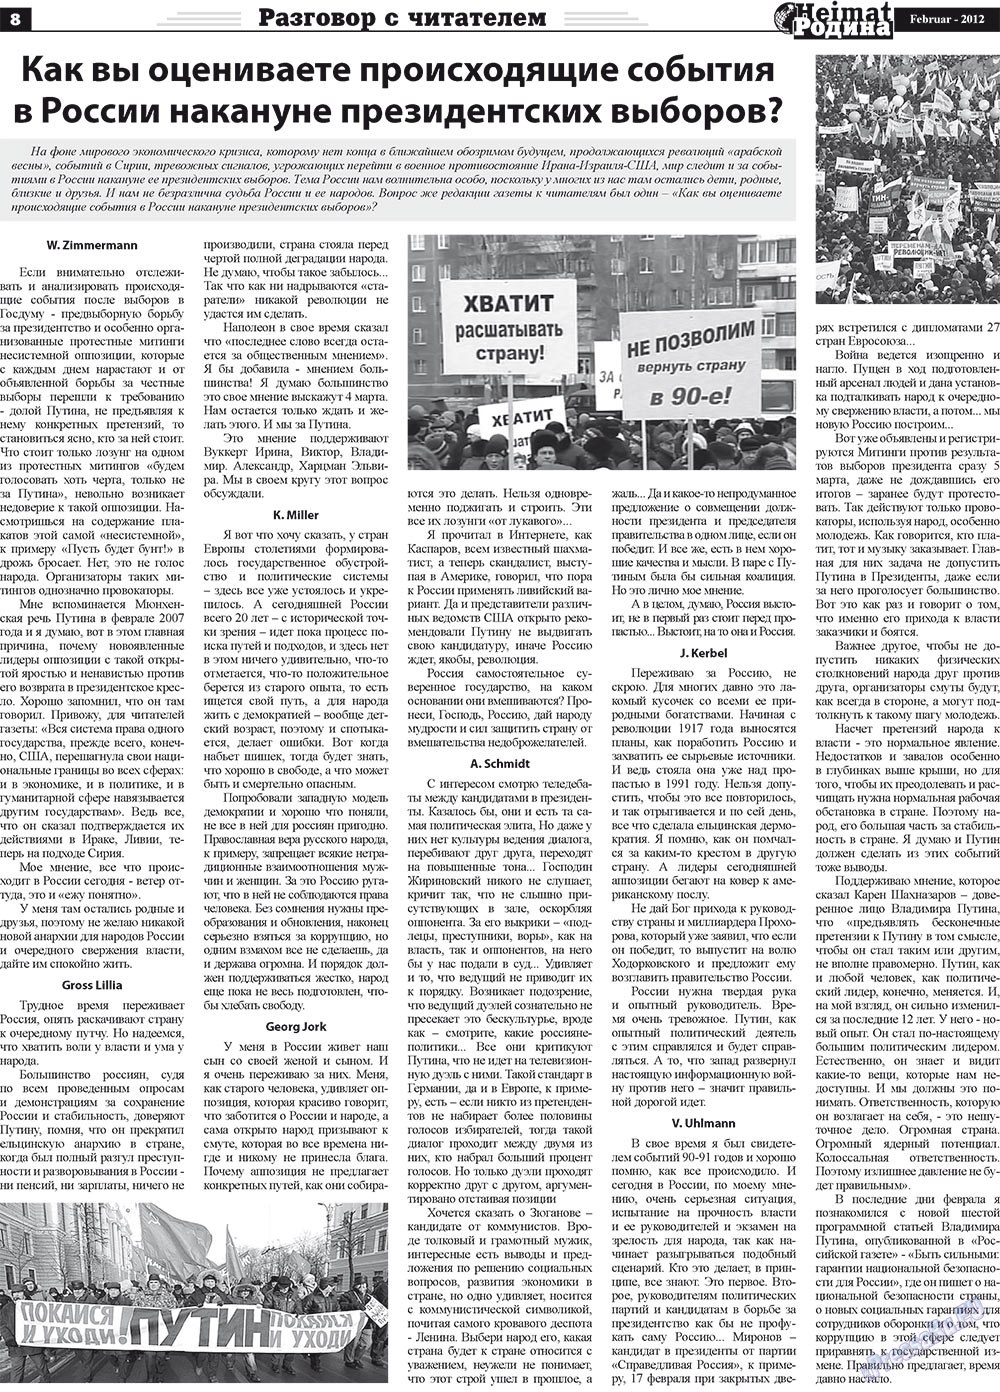 Heimat-Родина (газета). 2012 год, номер 2, стр. 8